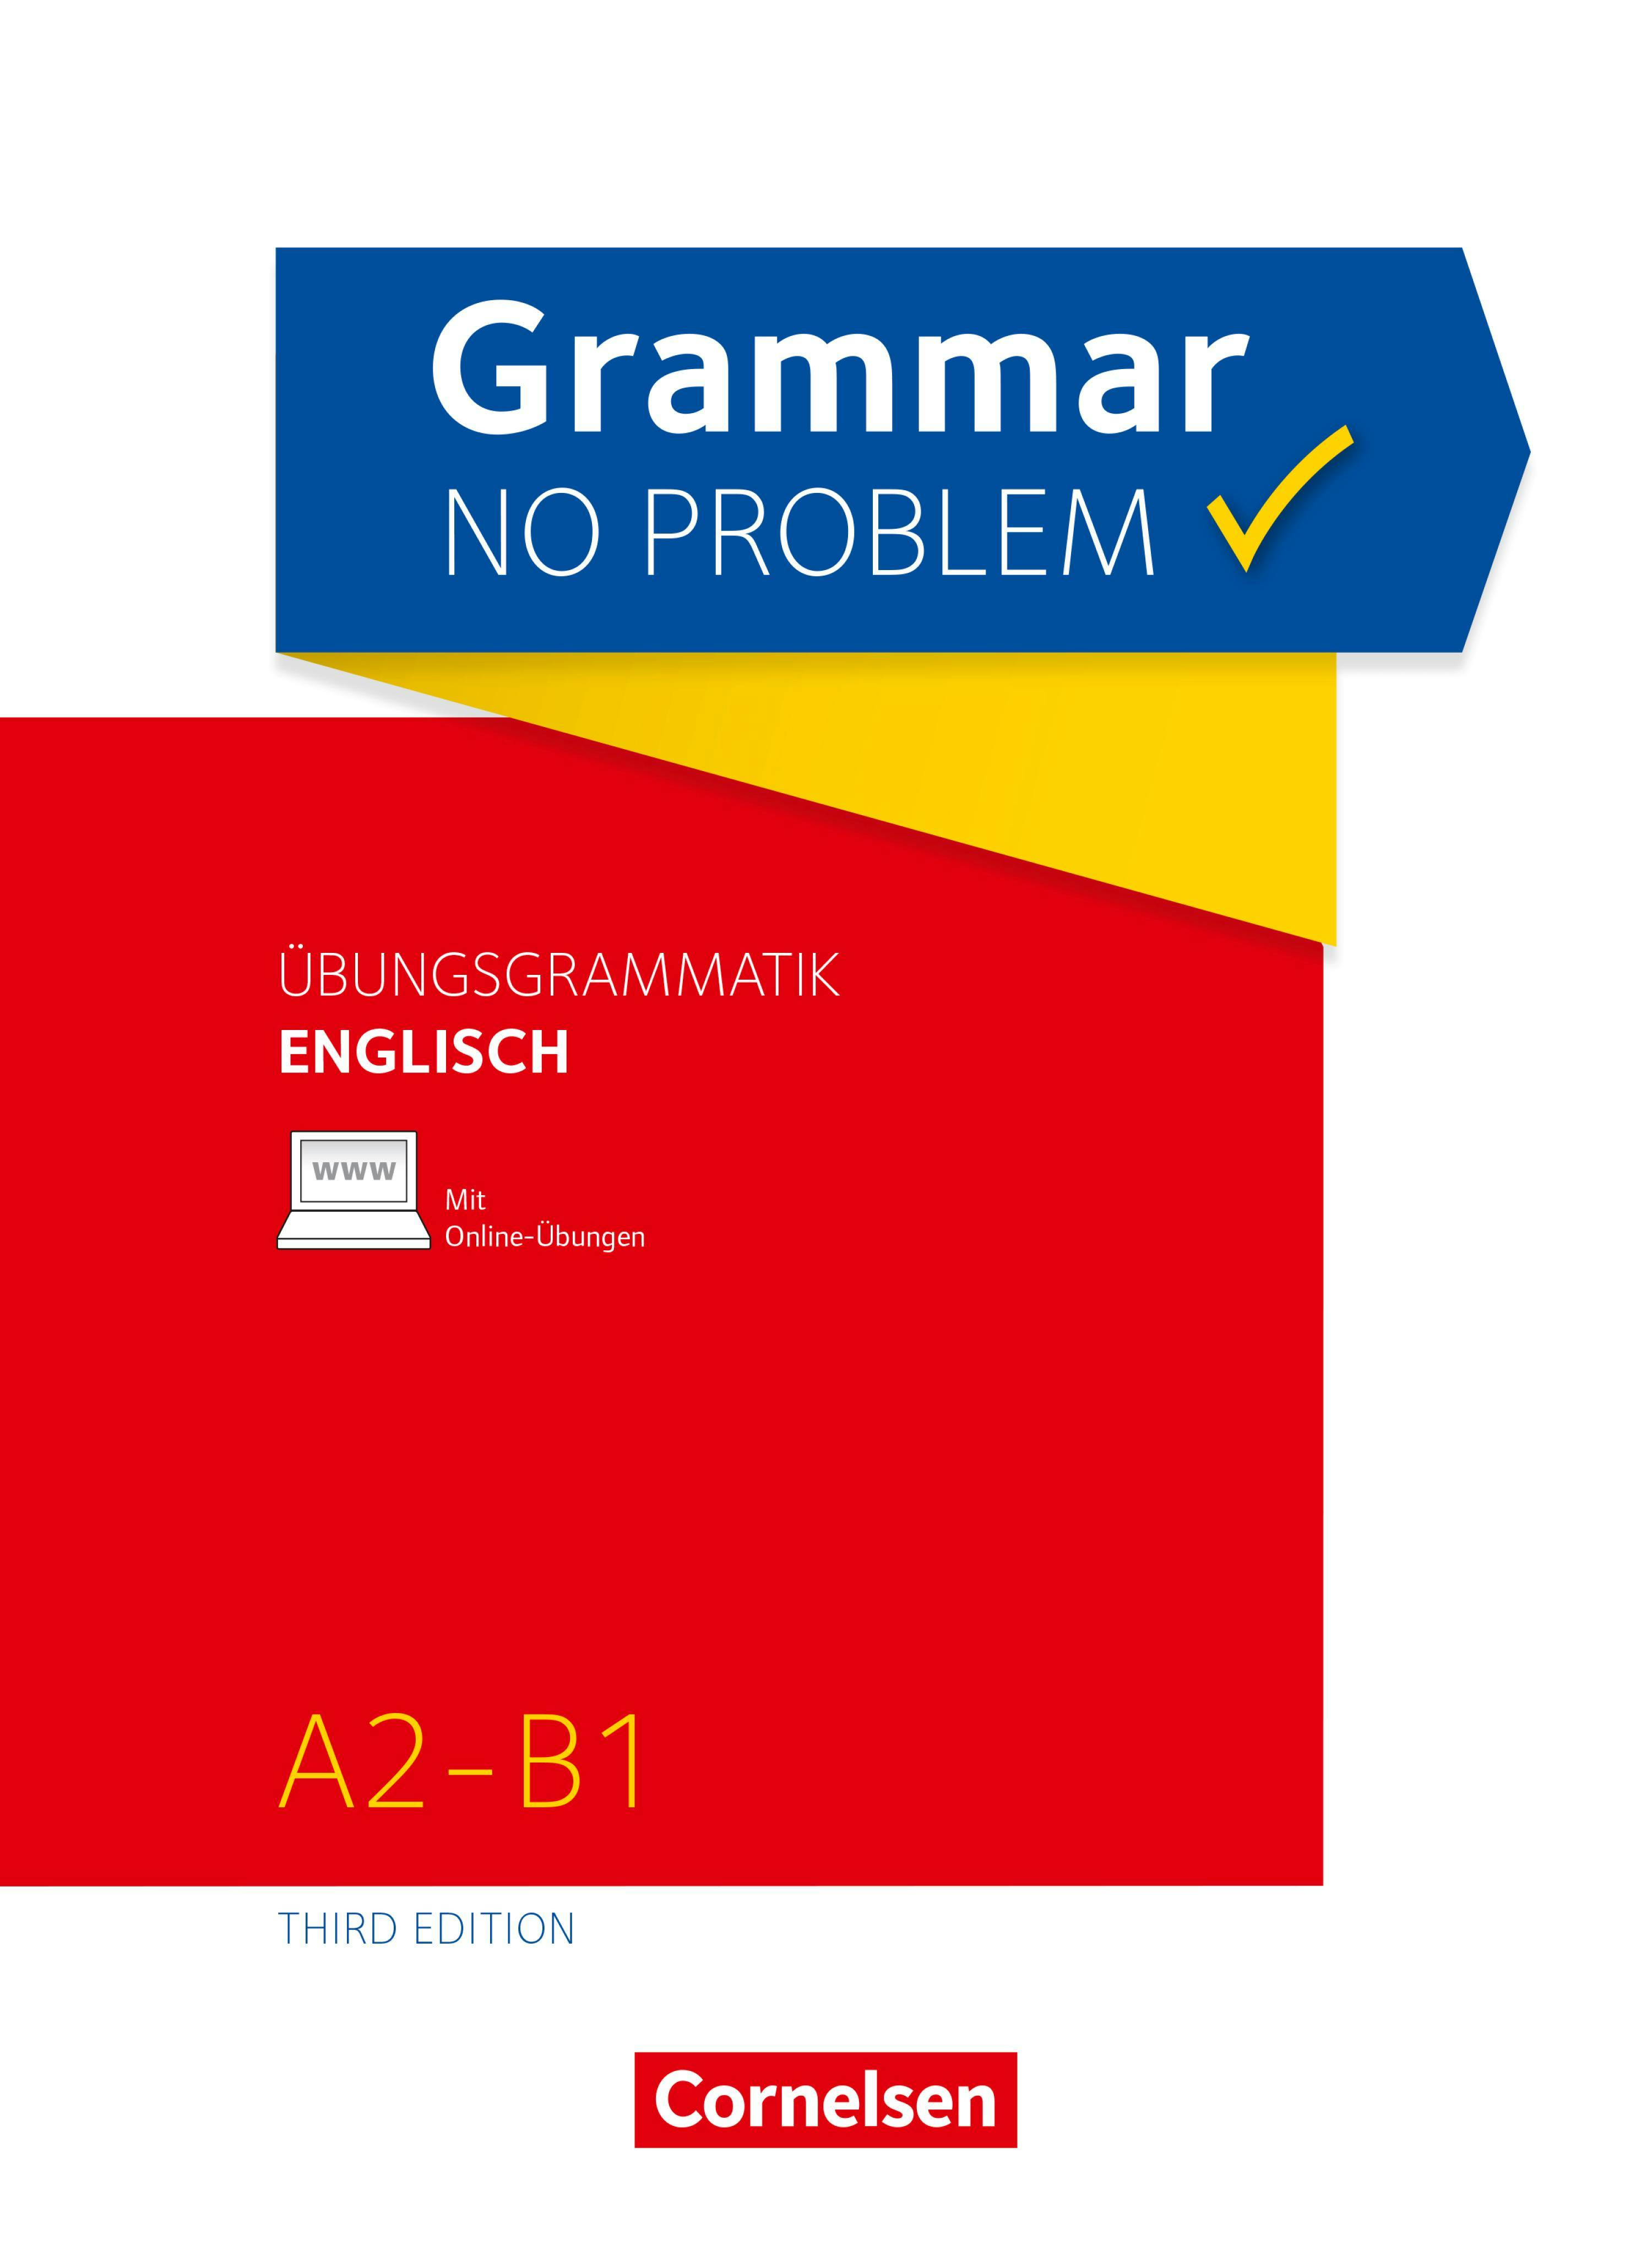 Grammar no problem - Third Edition / A2/B1 - Übungsgrammatik Englisch mit beiliegendem Lösungsschlüssel - undefined